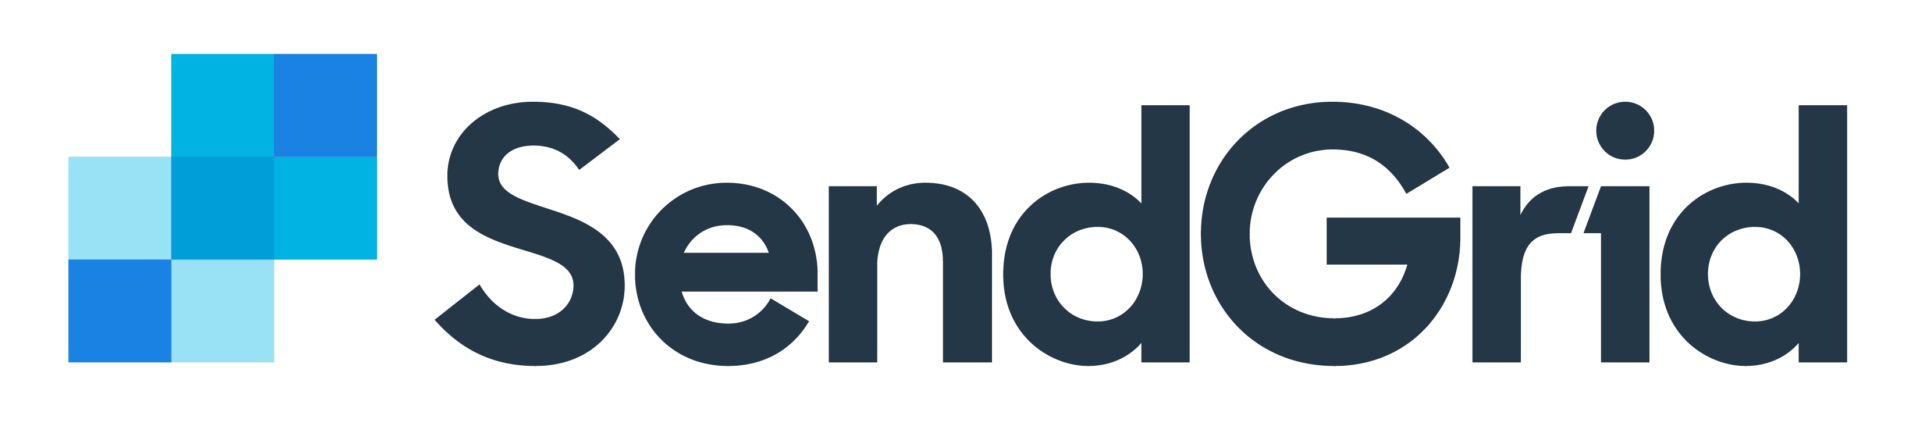 SendGrid logo 